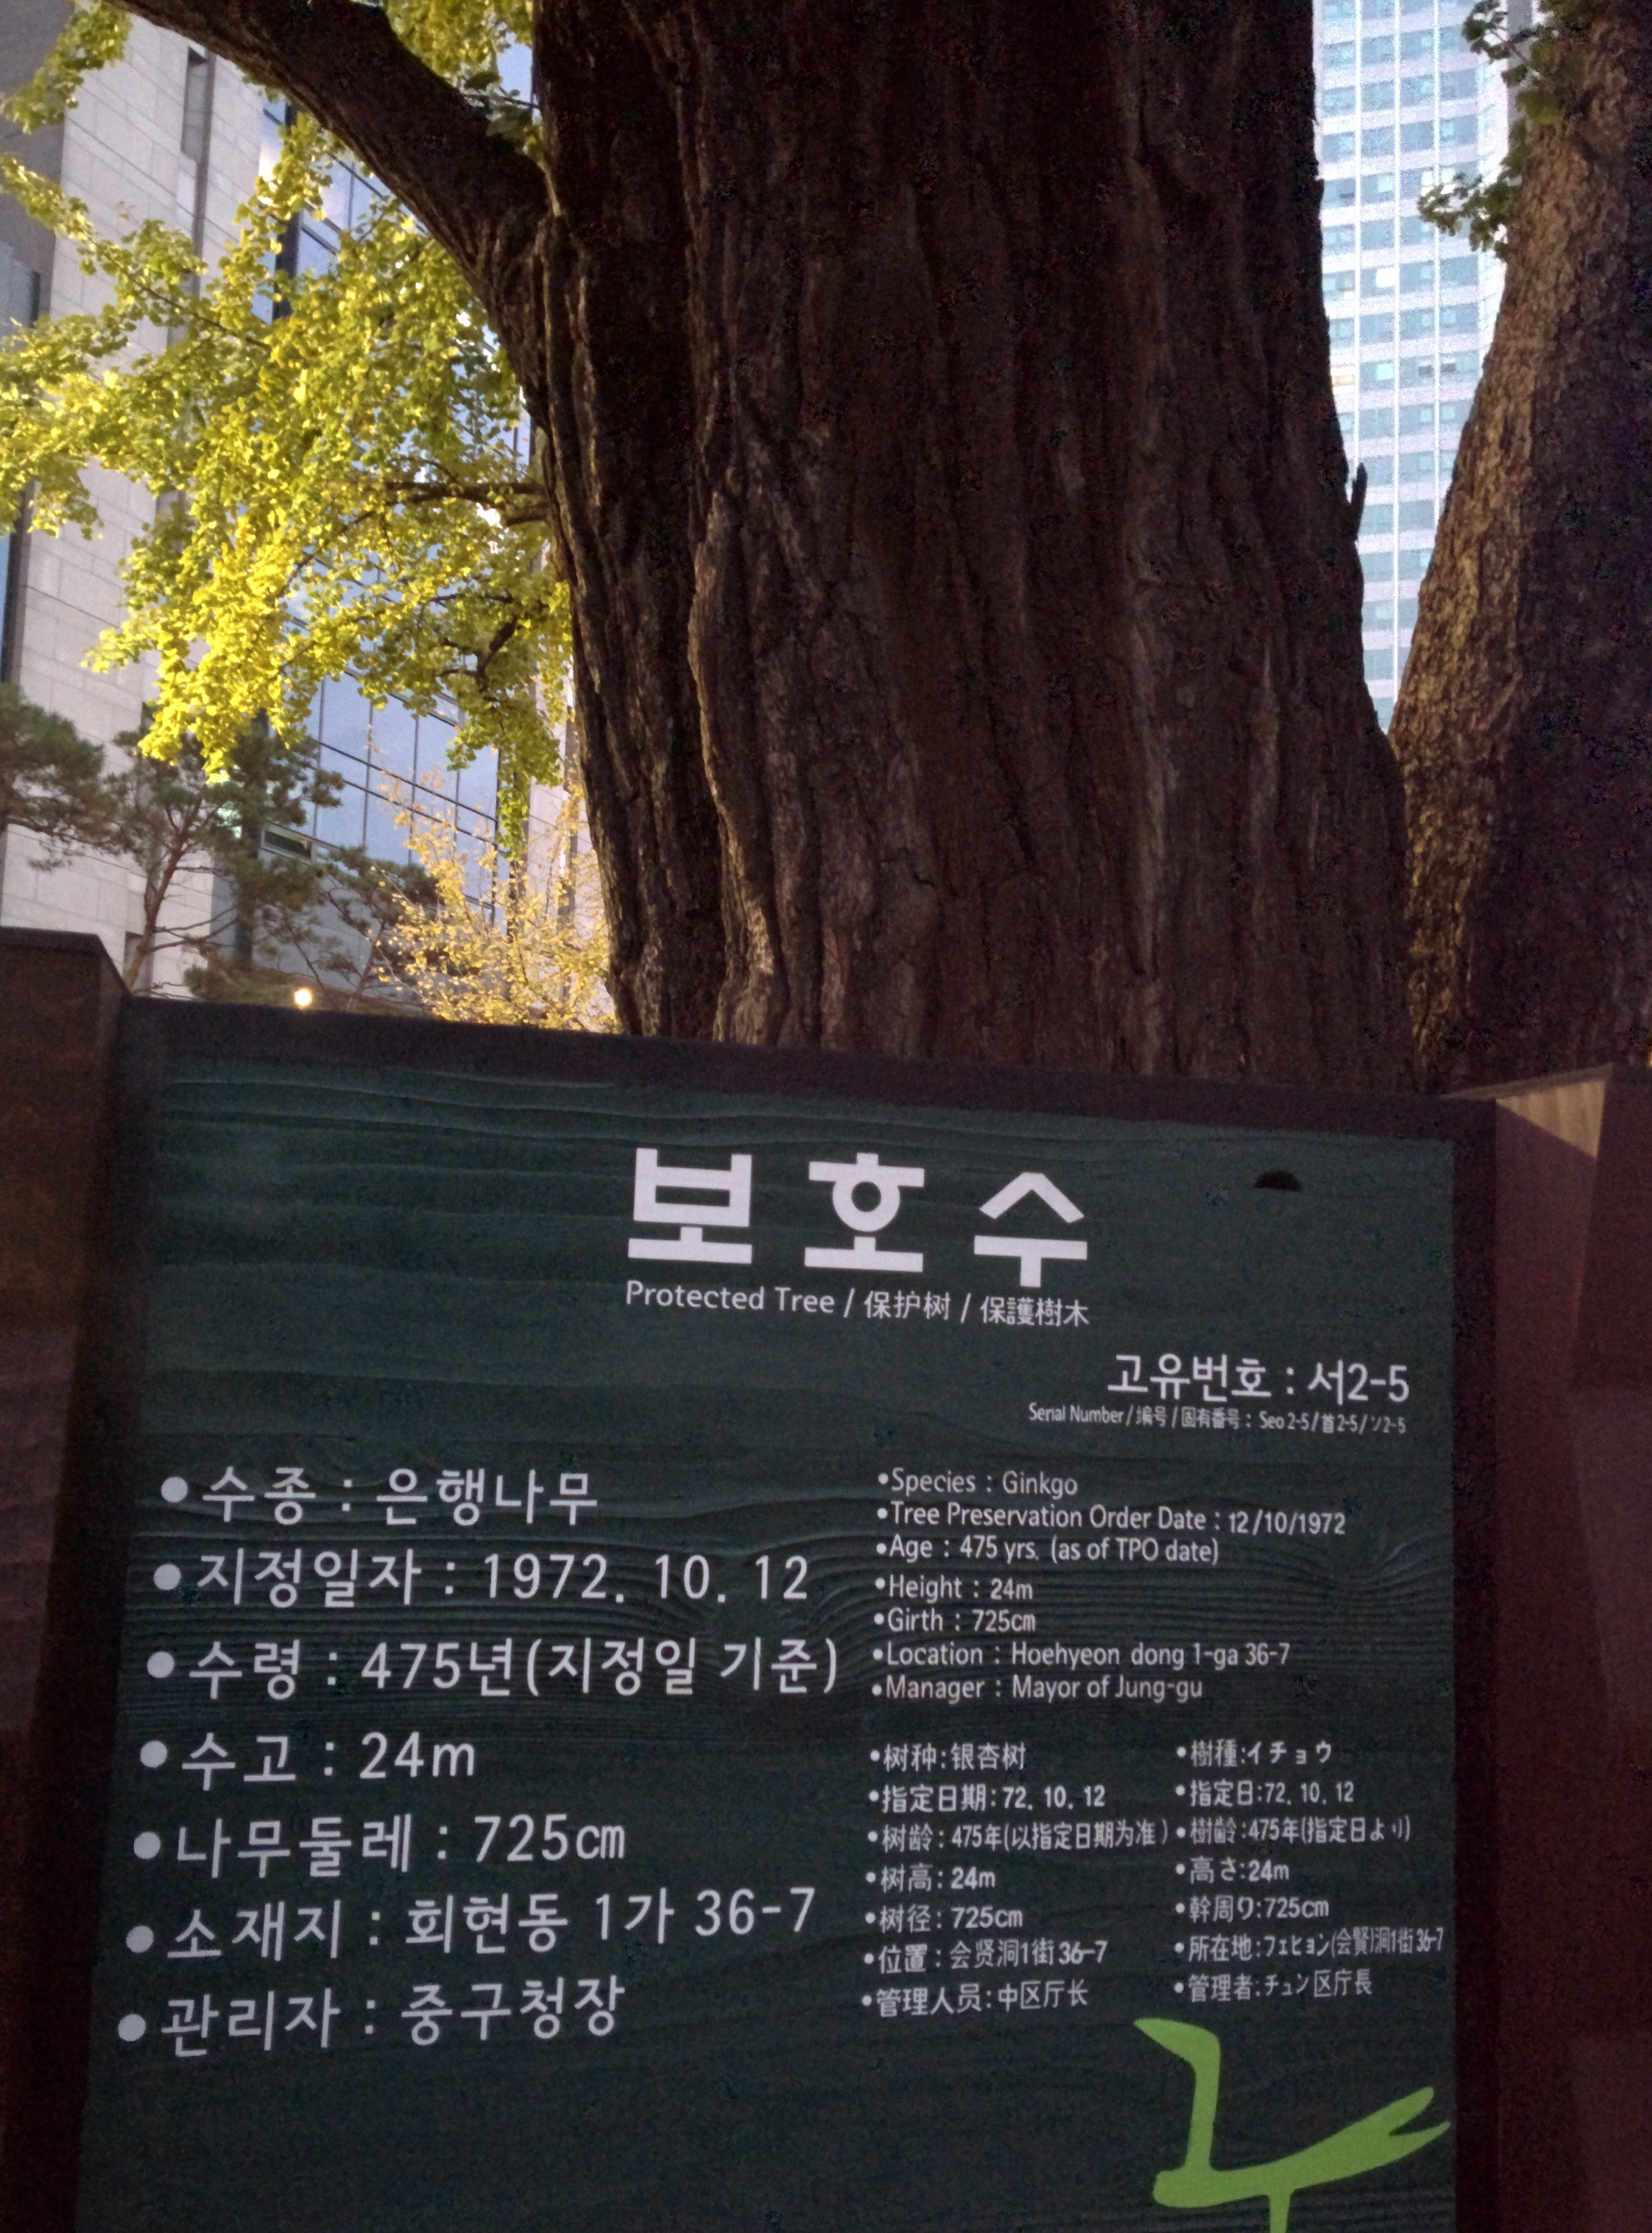 IMG_20151110_065003.jpg 서울의 500년 묵은 은행나무 노거수